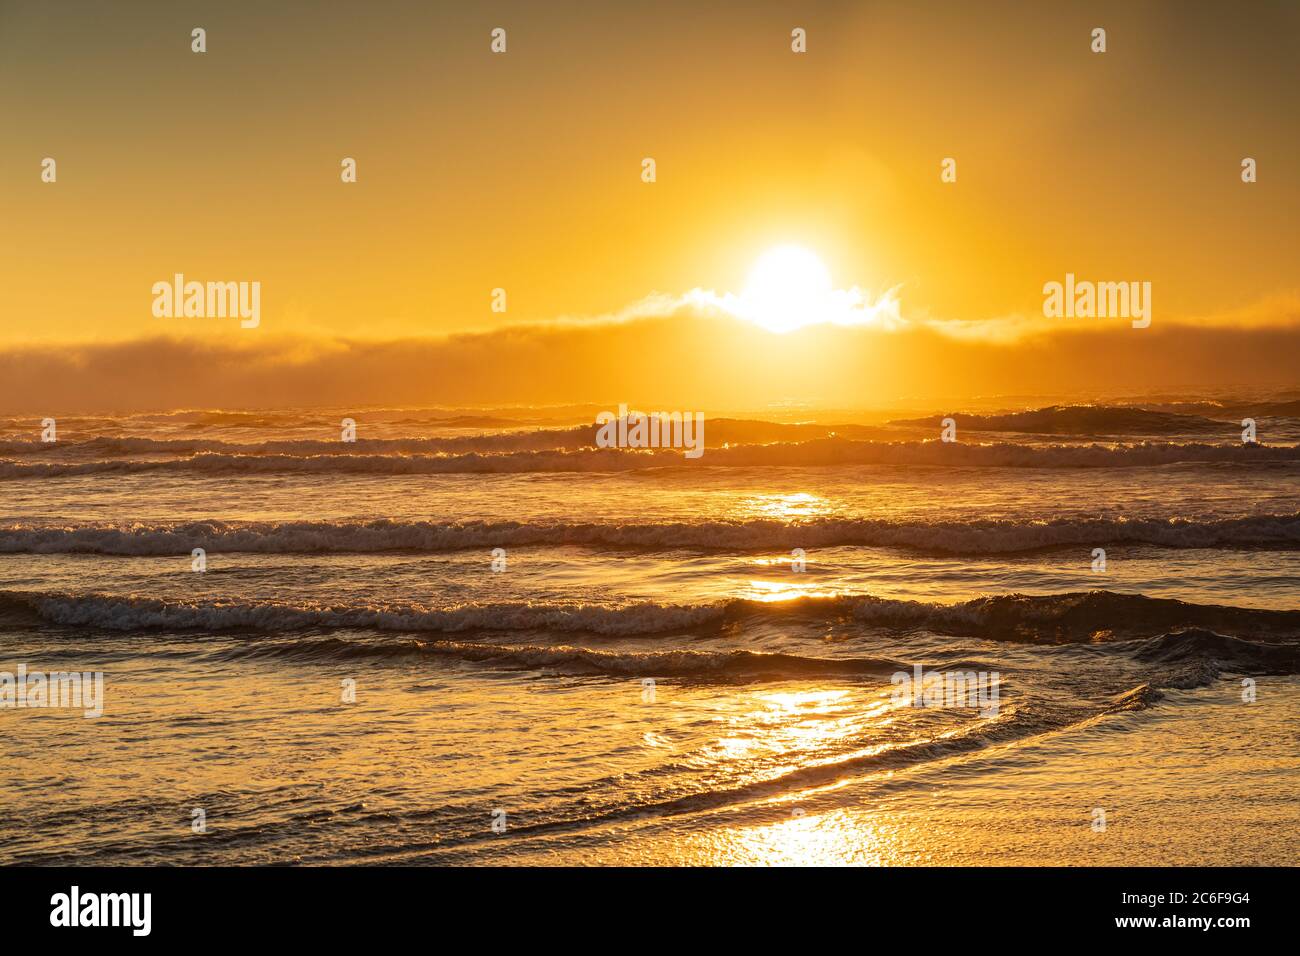 Big orange sun setting sends golden light across the waves breaking on shore. Stock Photo